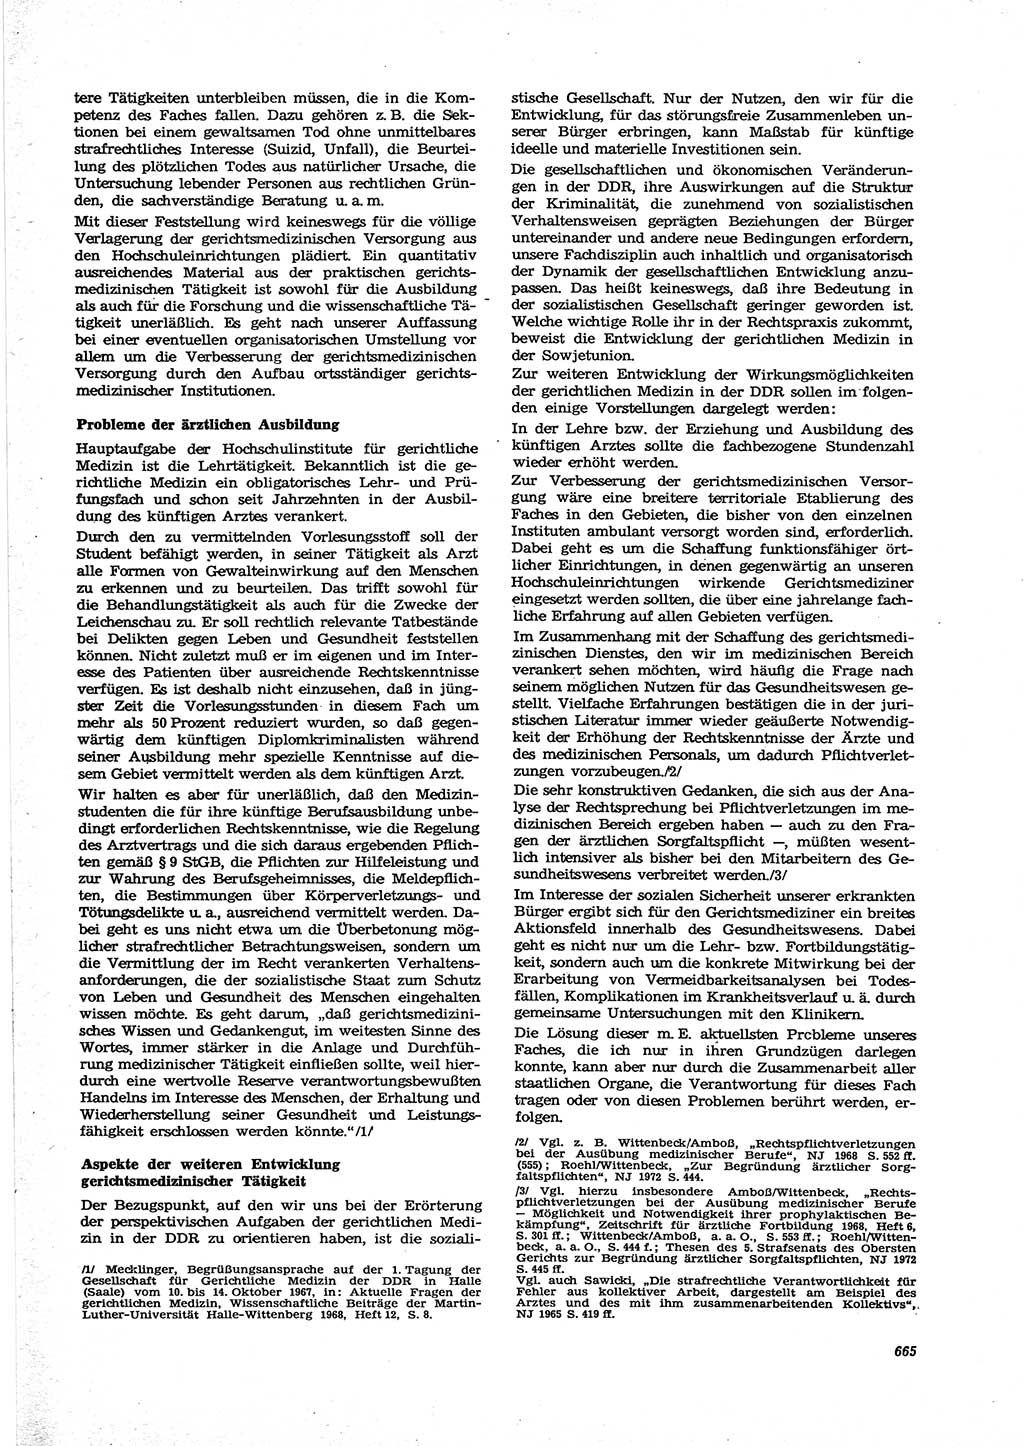 Neue Justiz (NJ), Zeitschrift für Recht und Rechtswissenschaft [Deutsche Demokratische Republik (DDR)], 27. Jahrgang 1973, Seite 665 (NJ DDR 1973, S. 665)